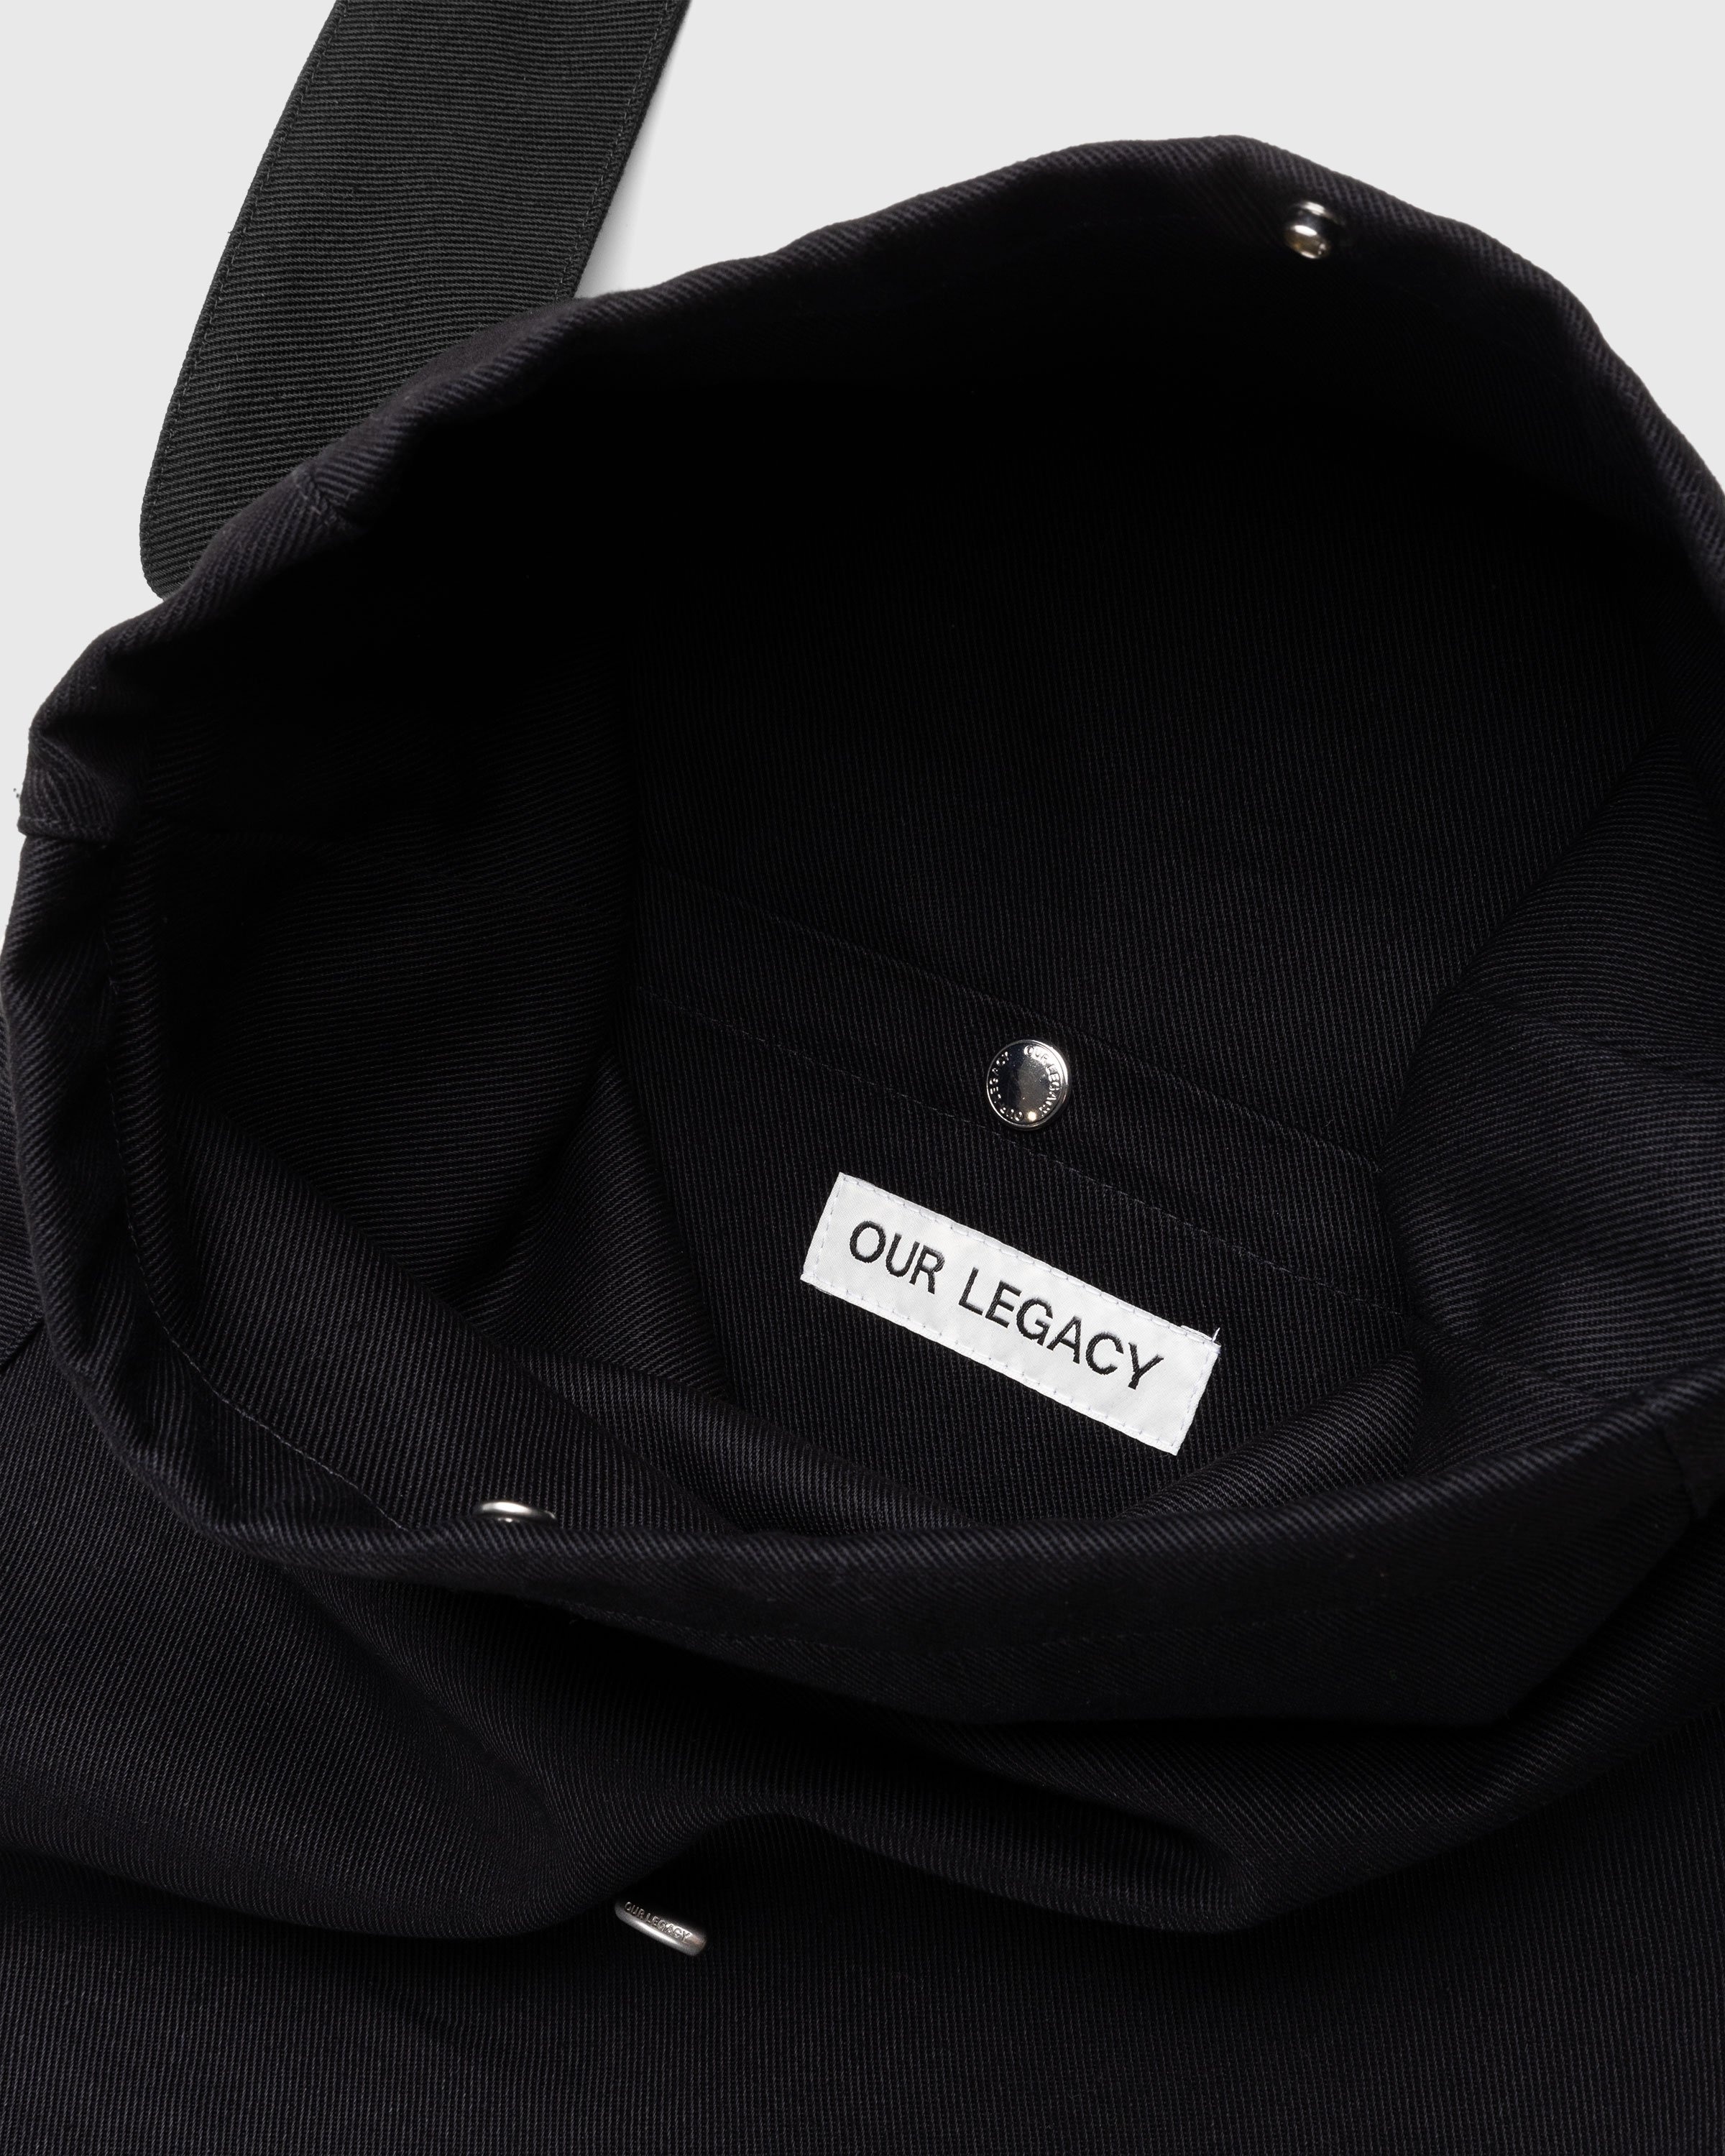 Our Legacy – Sling Bag Washed Black Denim - Bags - Black - Image 3